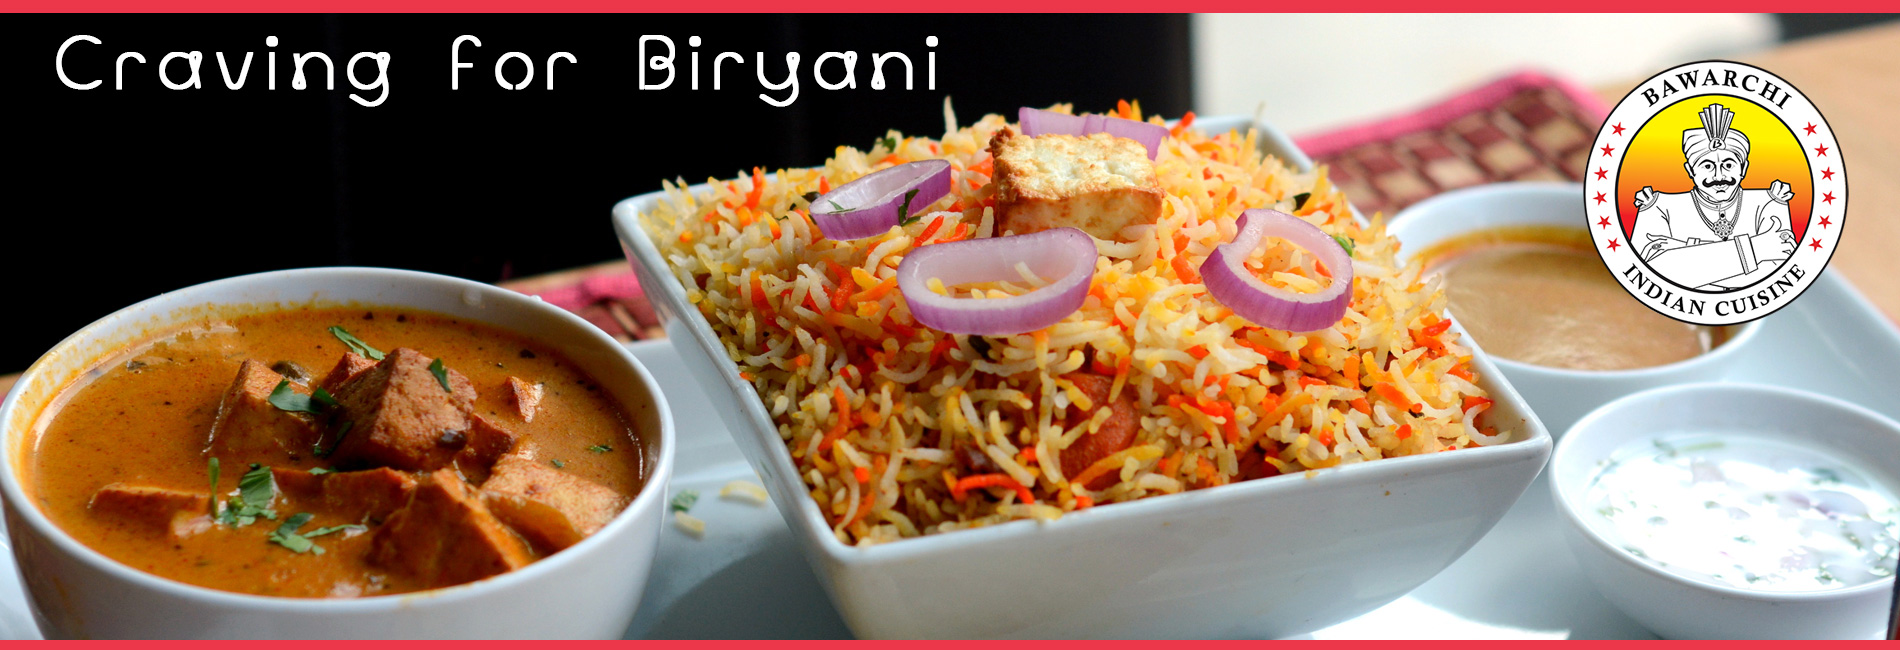 Bawarchi Biryanis - #1 Indian Restaurant in USA... Over 25+ biryanis....